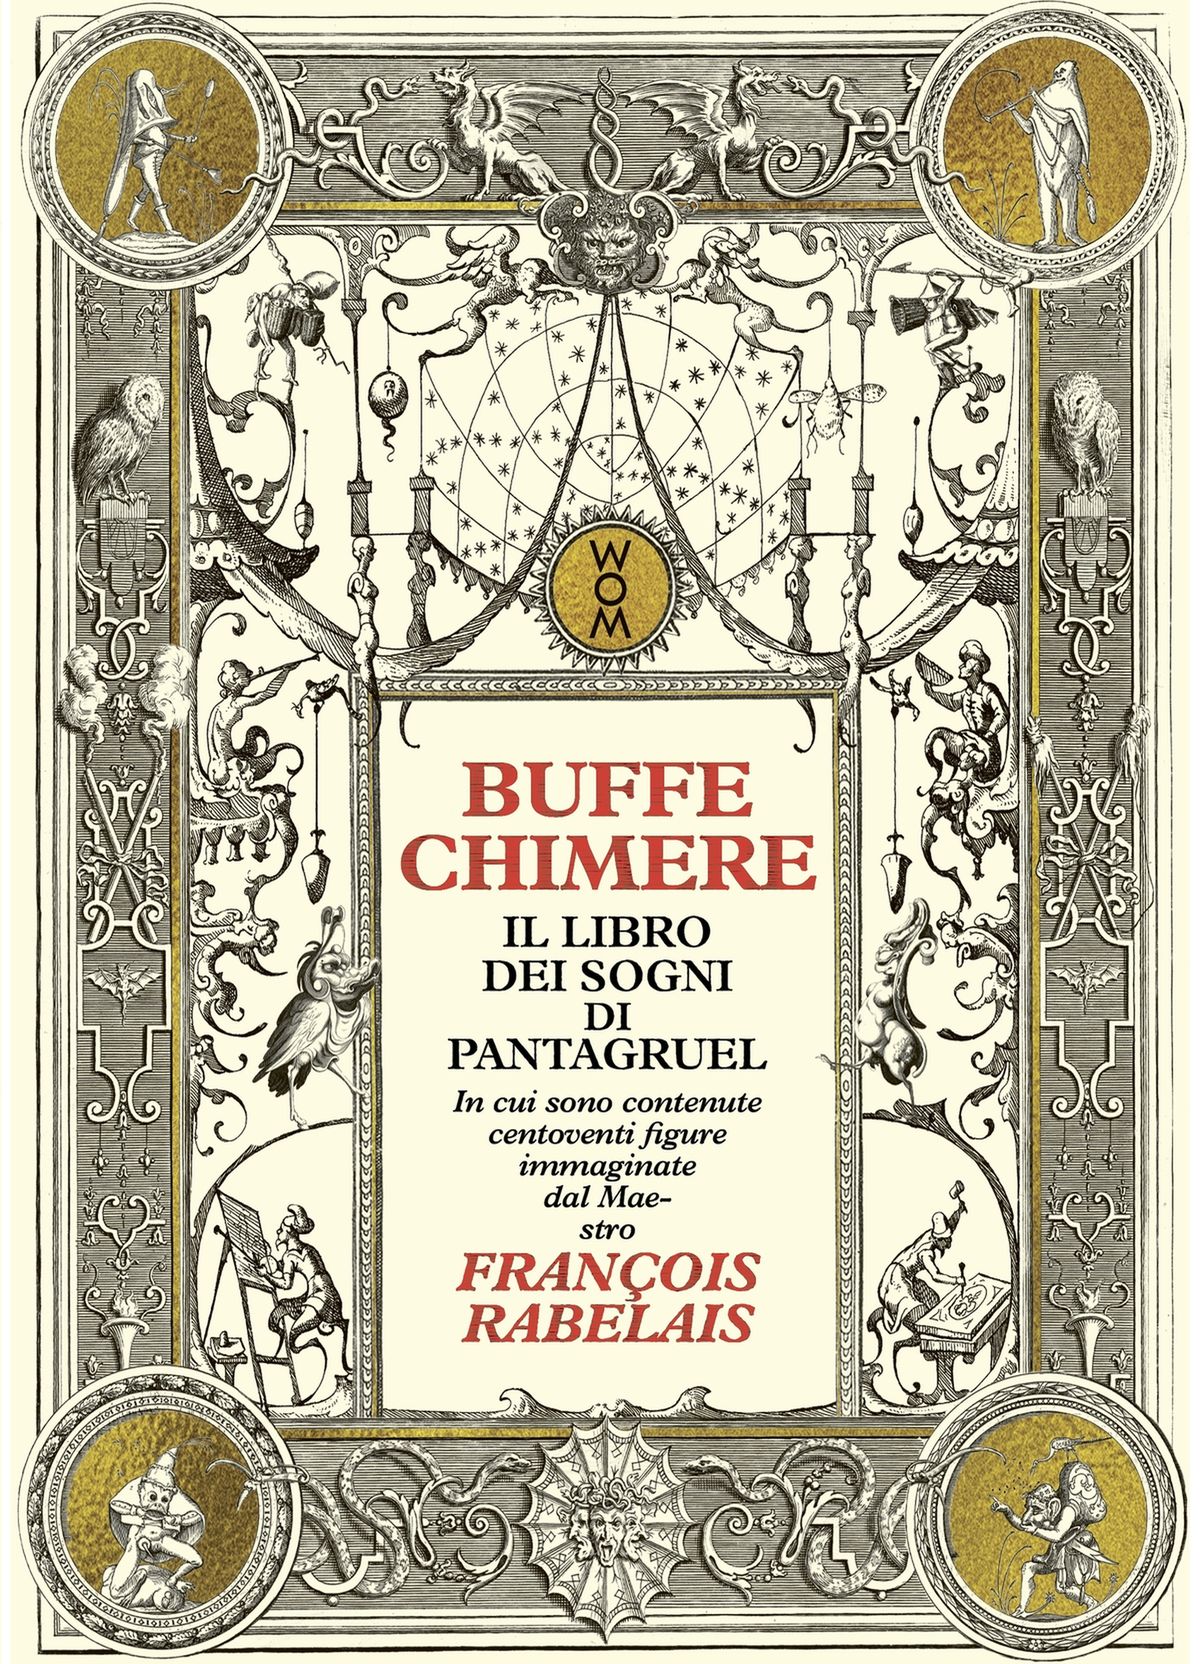 François Rabelais, Buffe chimere, Il libro dei sogni di Pantagruel